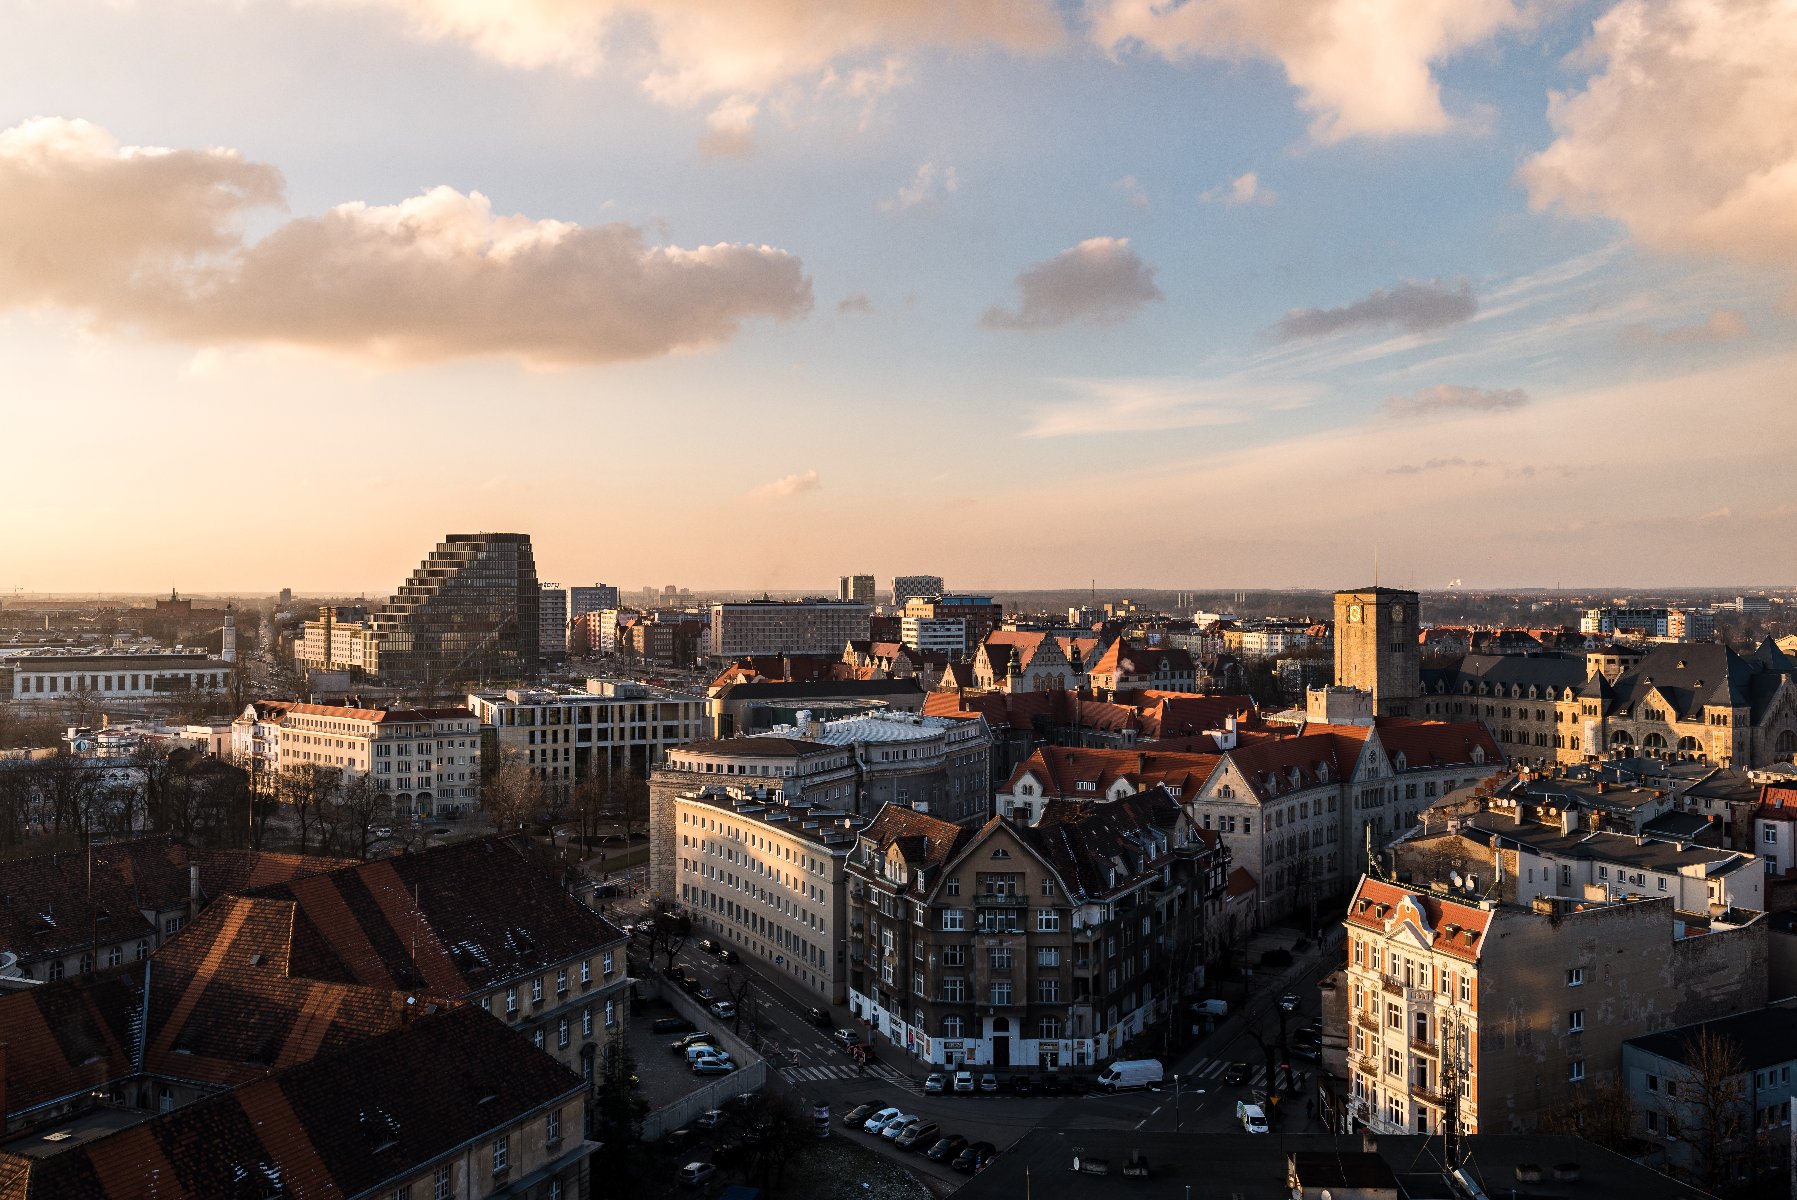 Zdjęcie przedstawia widok z lotu ptaka na centrum Poznania, nad którym zachodzi słońce. - grafika artykułu